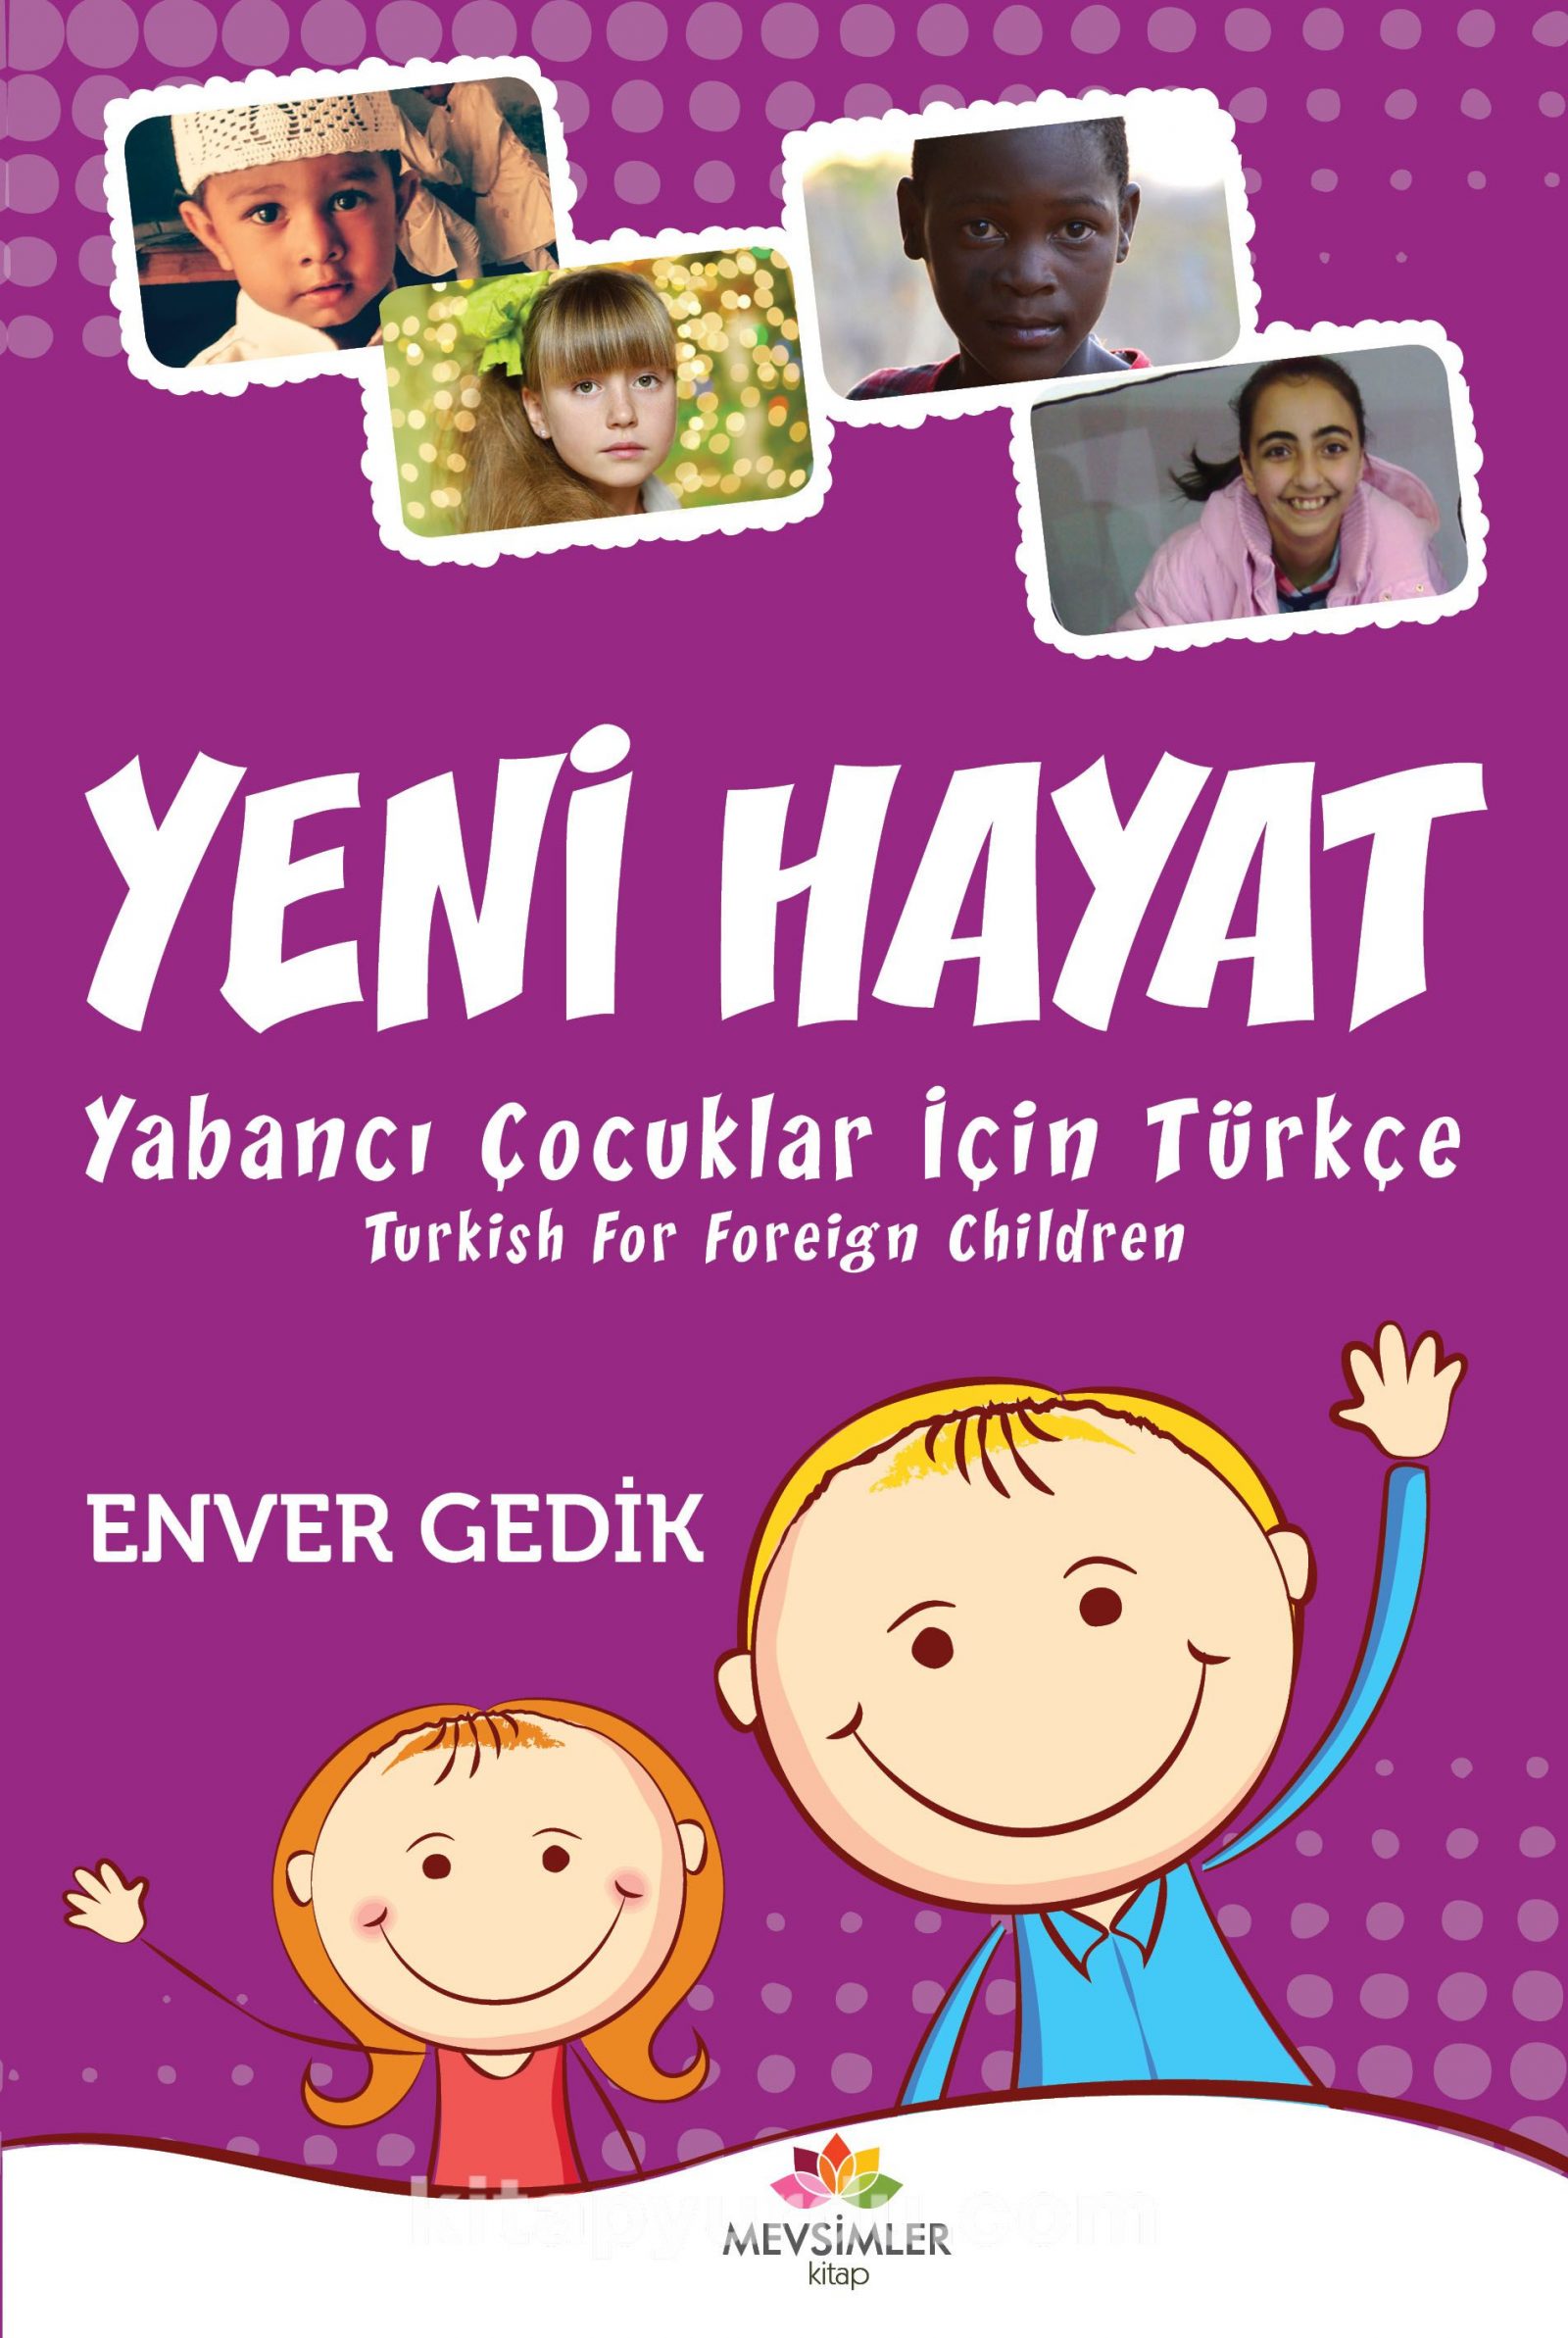 Yeni Hayat & Yabancı Çocuklar İçin Türkçe